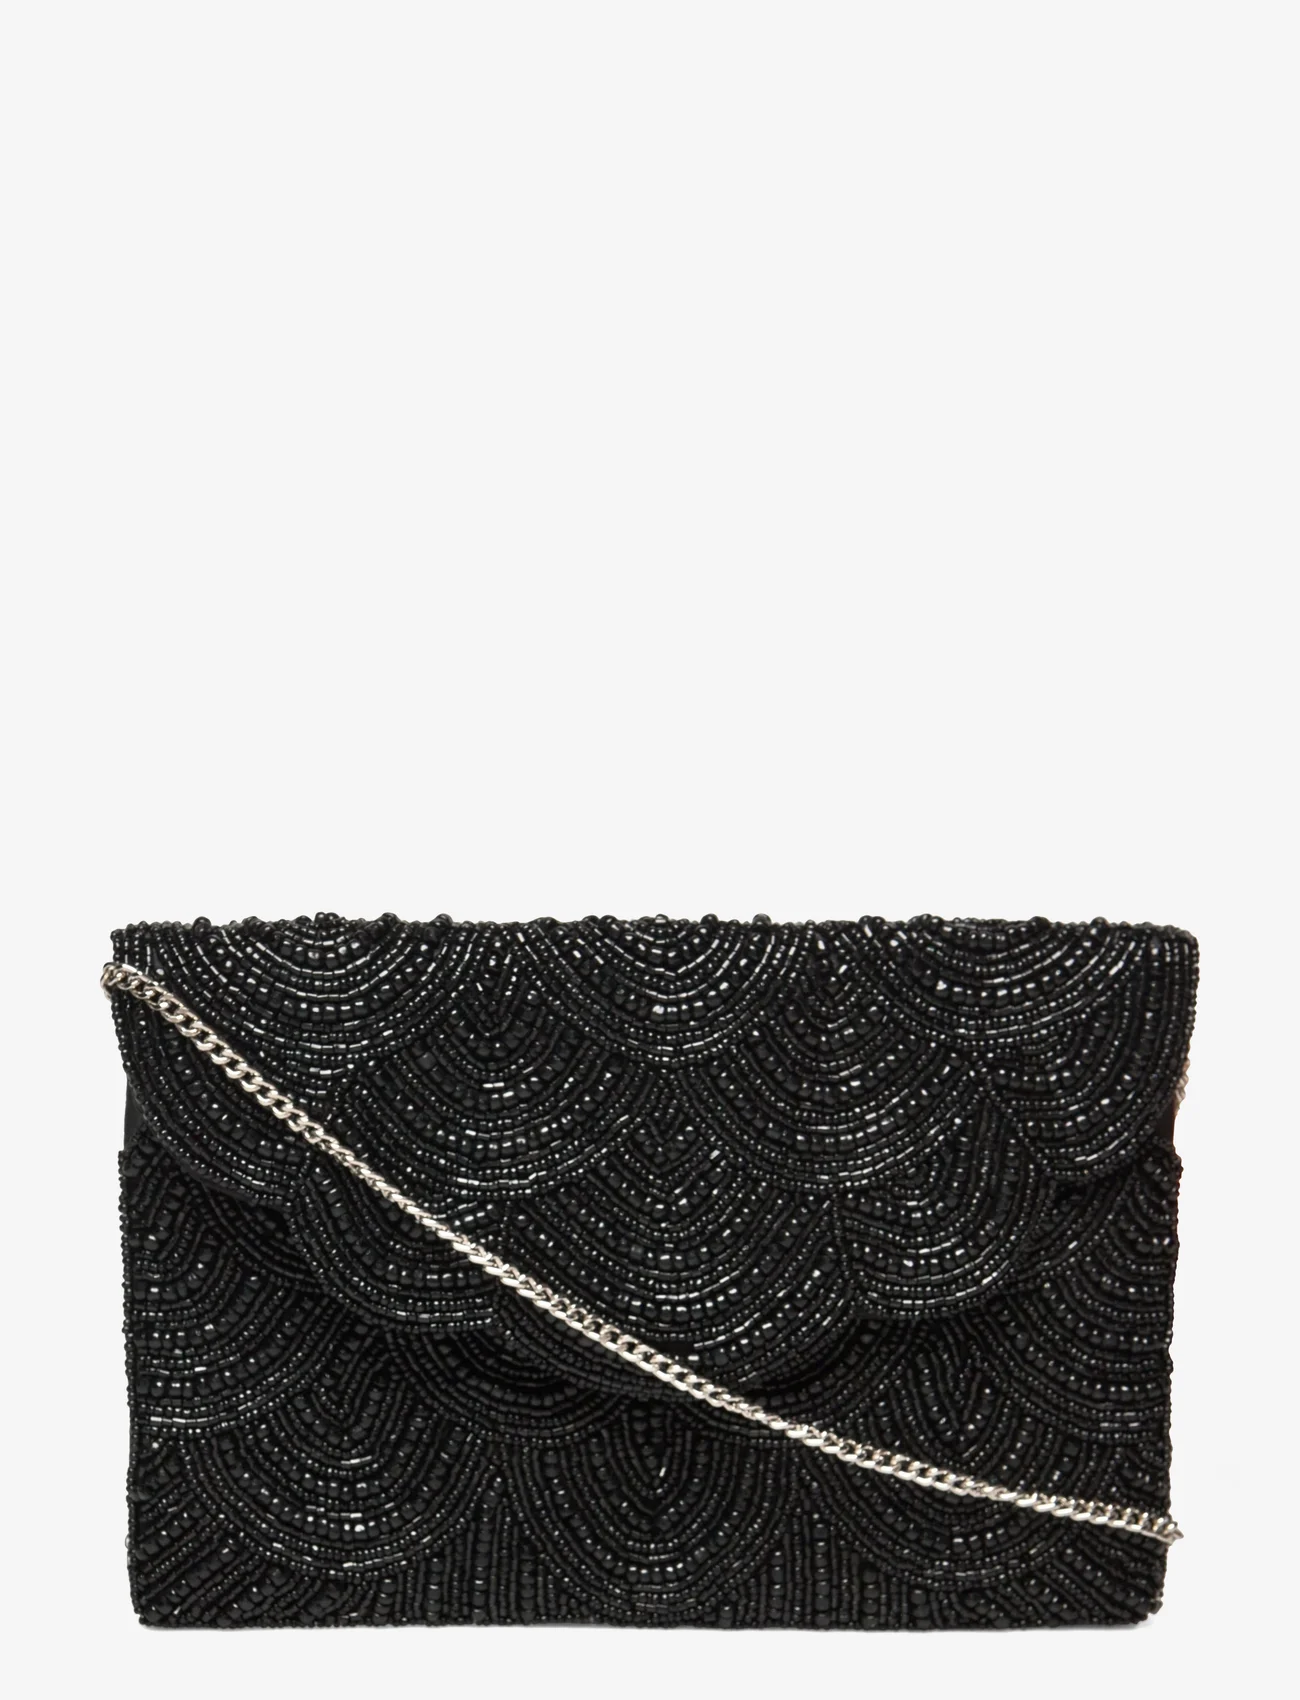 Pipol's Bazaar - Casablanca Black Clutch Bag - feestelijke kleding voor outlet-prijzen - multi - 0